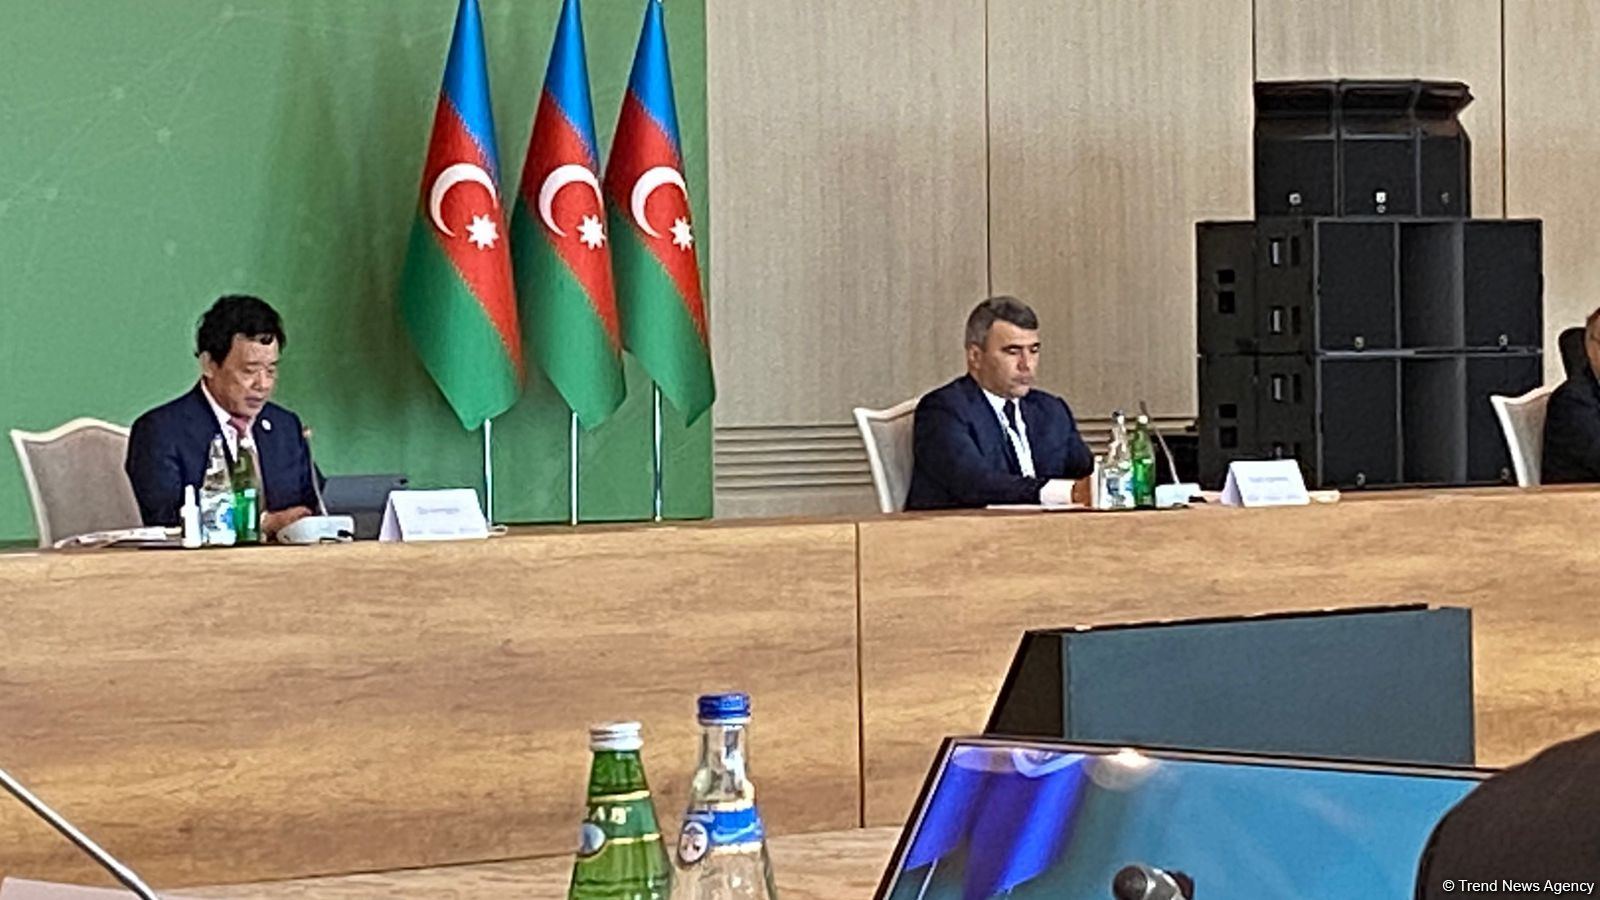 Азербайджан эффективно сотрудничает с FAO по ряду стратегий и программ реагирования на новые вызовы - министр